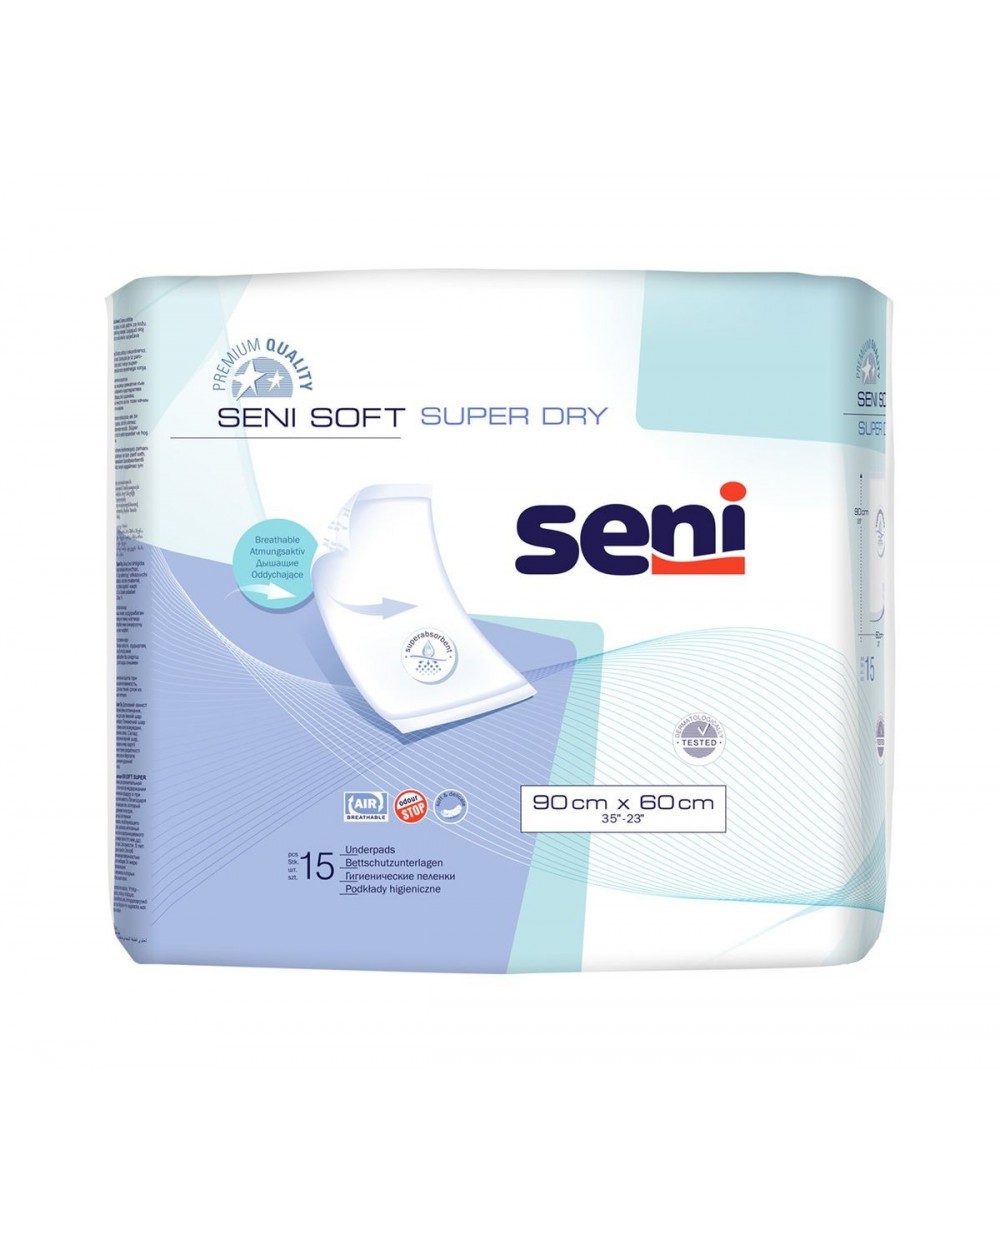 SENI Soft Super Dry Bettschutzunterlage mit Superabsorber - 4